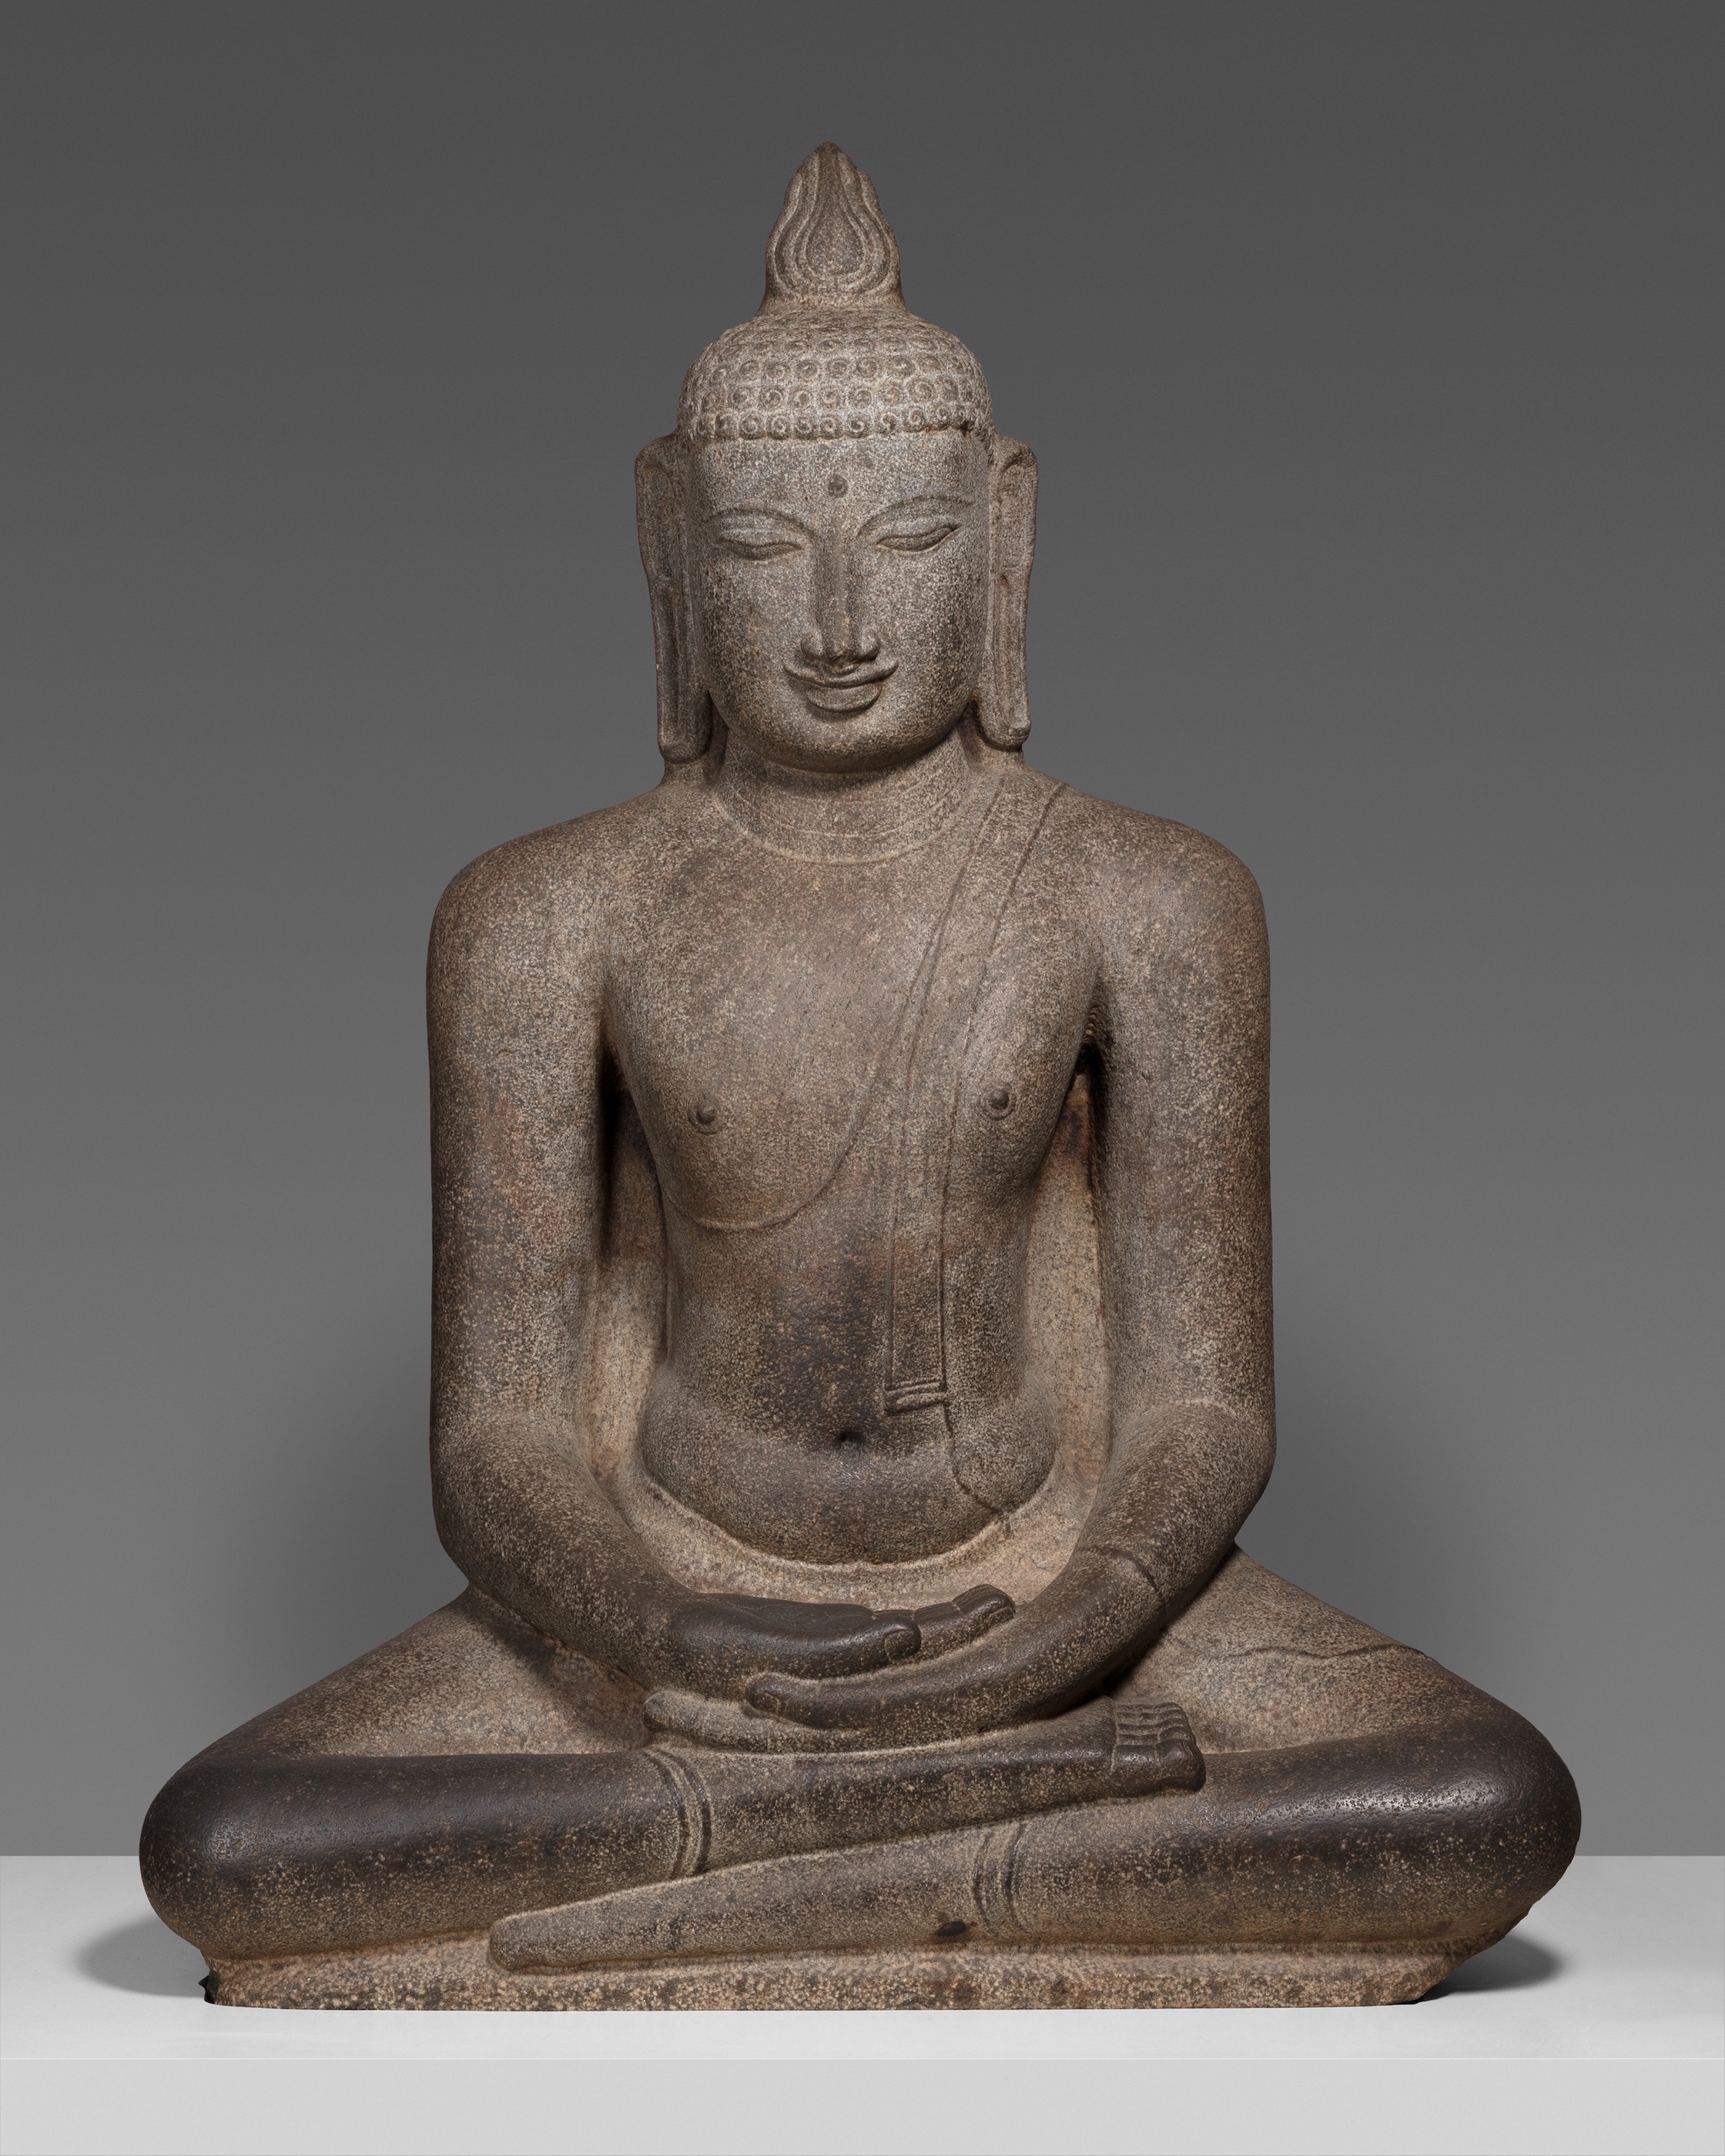 Ülő Sákjamuni Buddha meditálás közben (Meditációs mudrá) by Unknown Artist - 12. század körül - 160 × 120,2 × 56,3 cm 